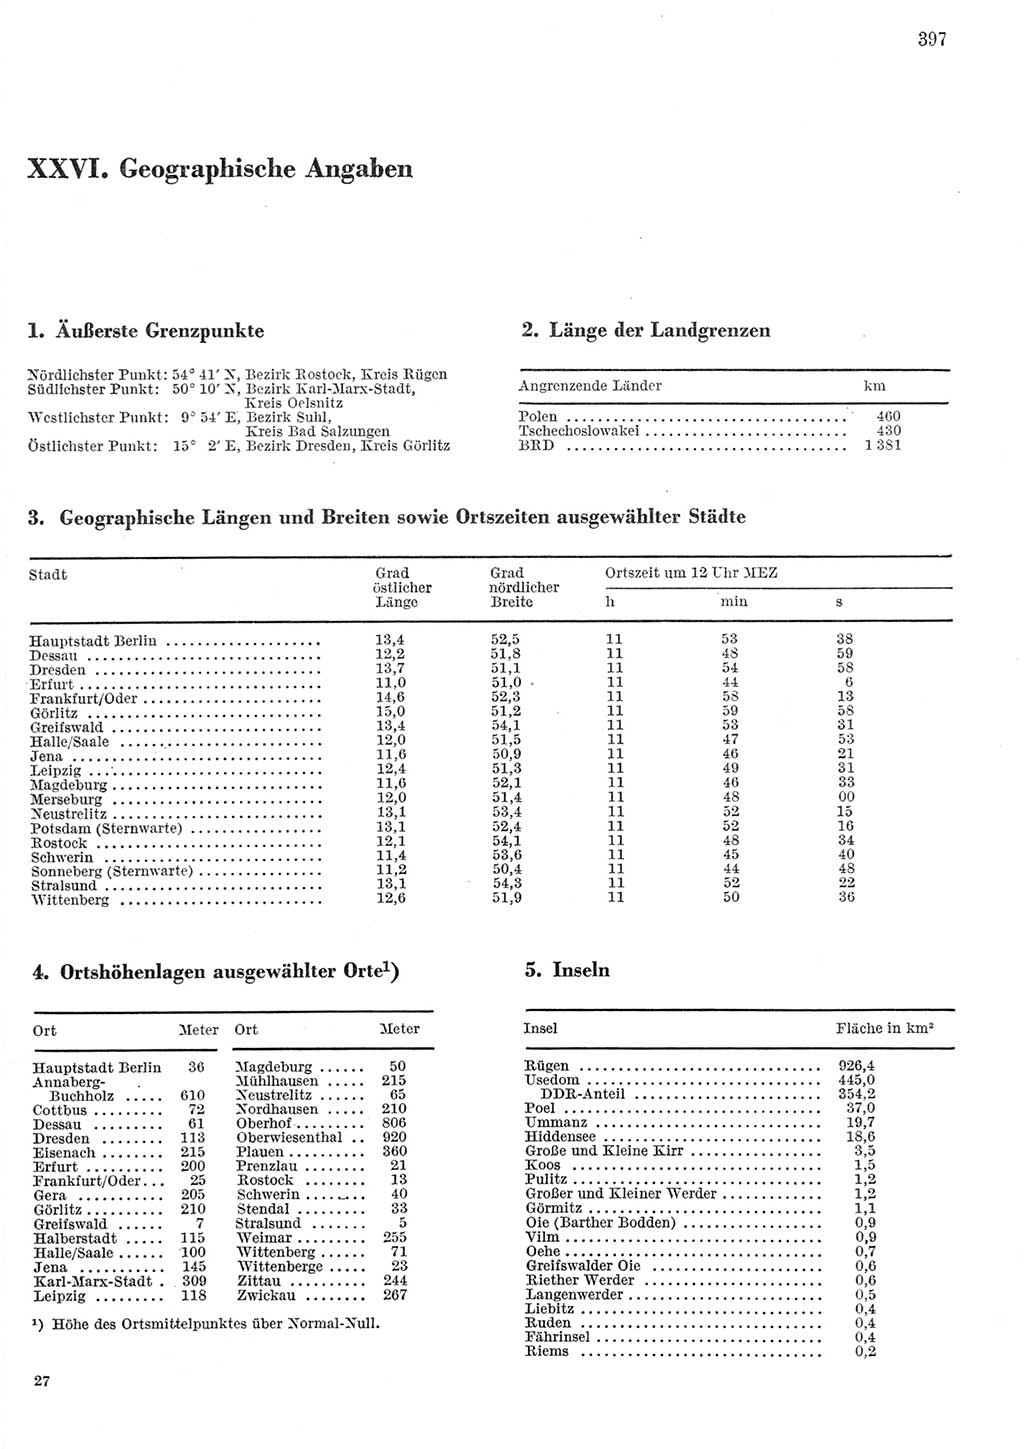 Statistisches Jahrbuch der Deutschen Demokratischen Republik (DDR) 1979, Seite 397 (Stat. Jb. DDR 1979, S. 397)